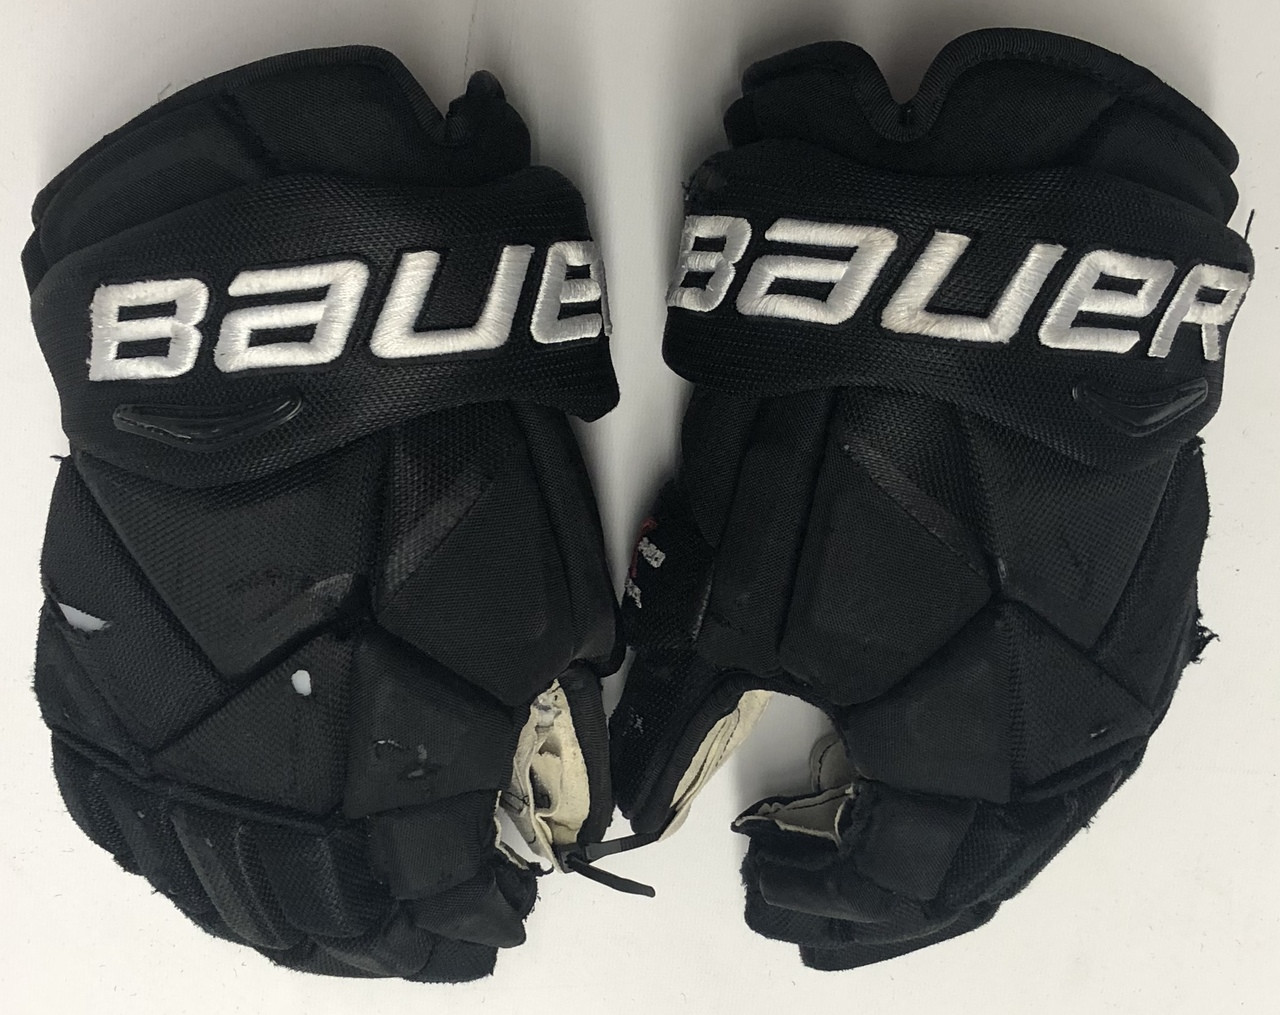 Bauer Vapor 1X Pro Glove Men